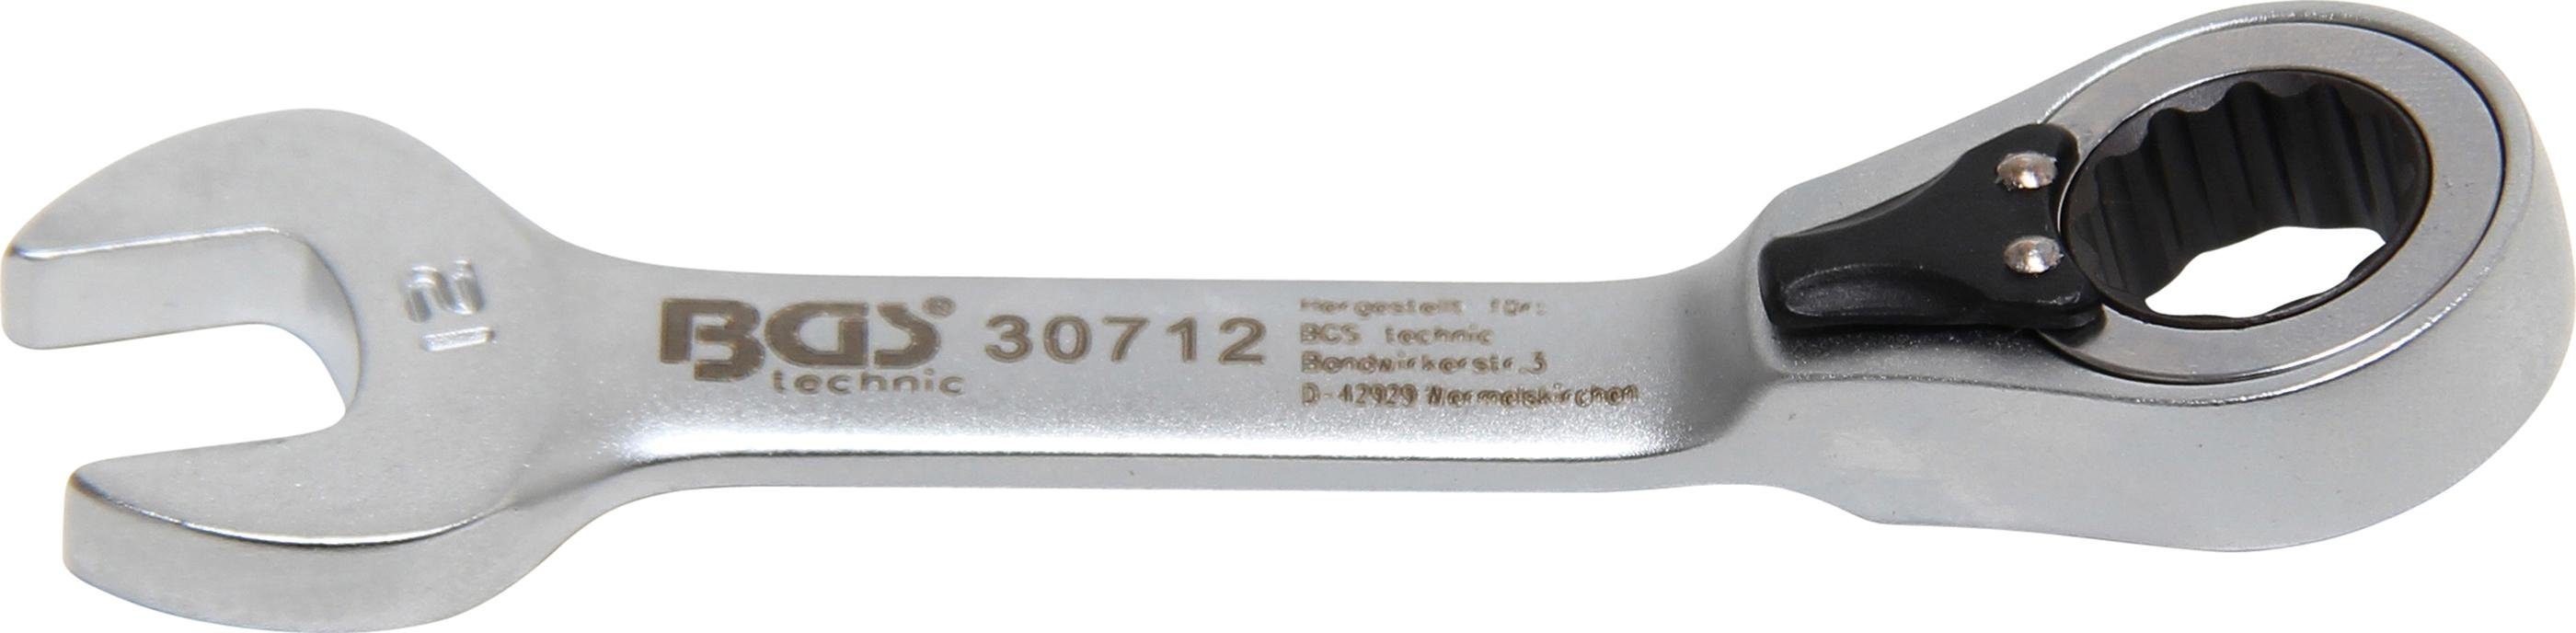 BGS technic Stecknuss Ratschenring-Maulschlüssel, kurz, umschaltbar, SW 12 mm